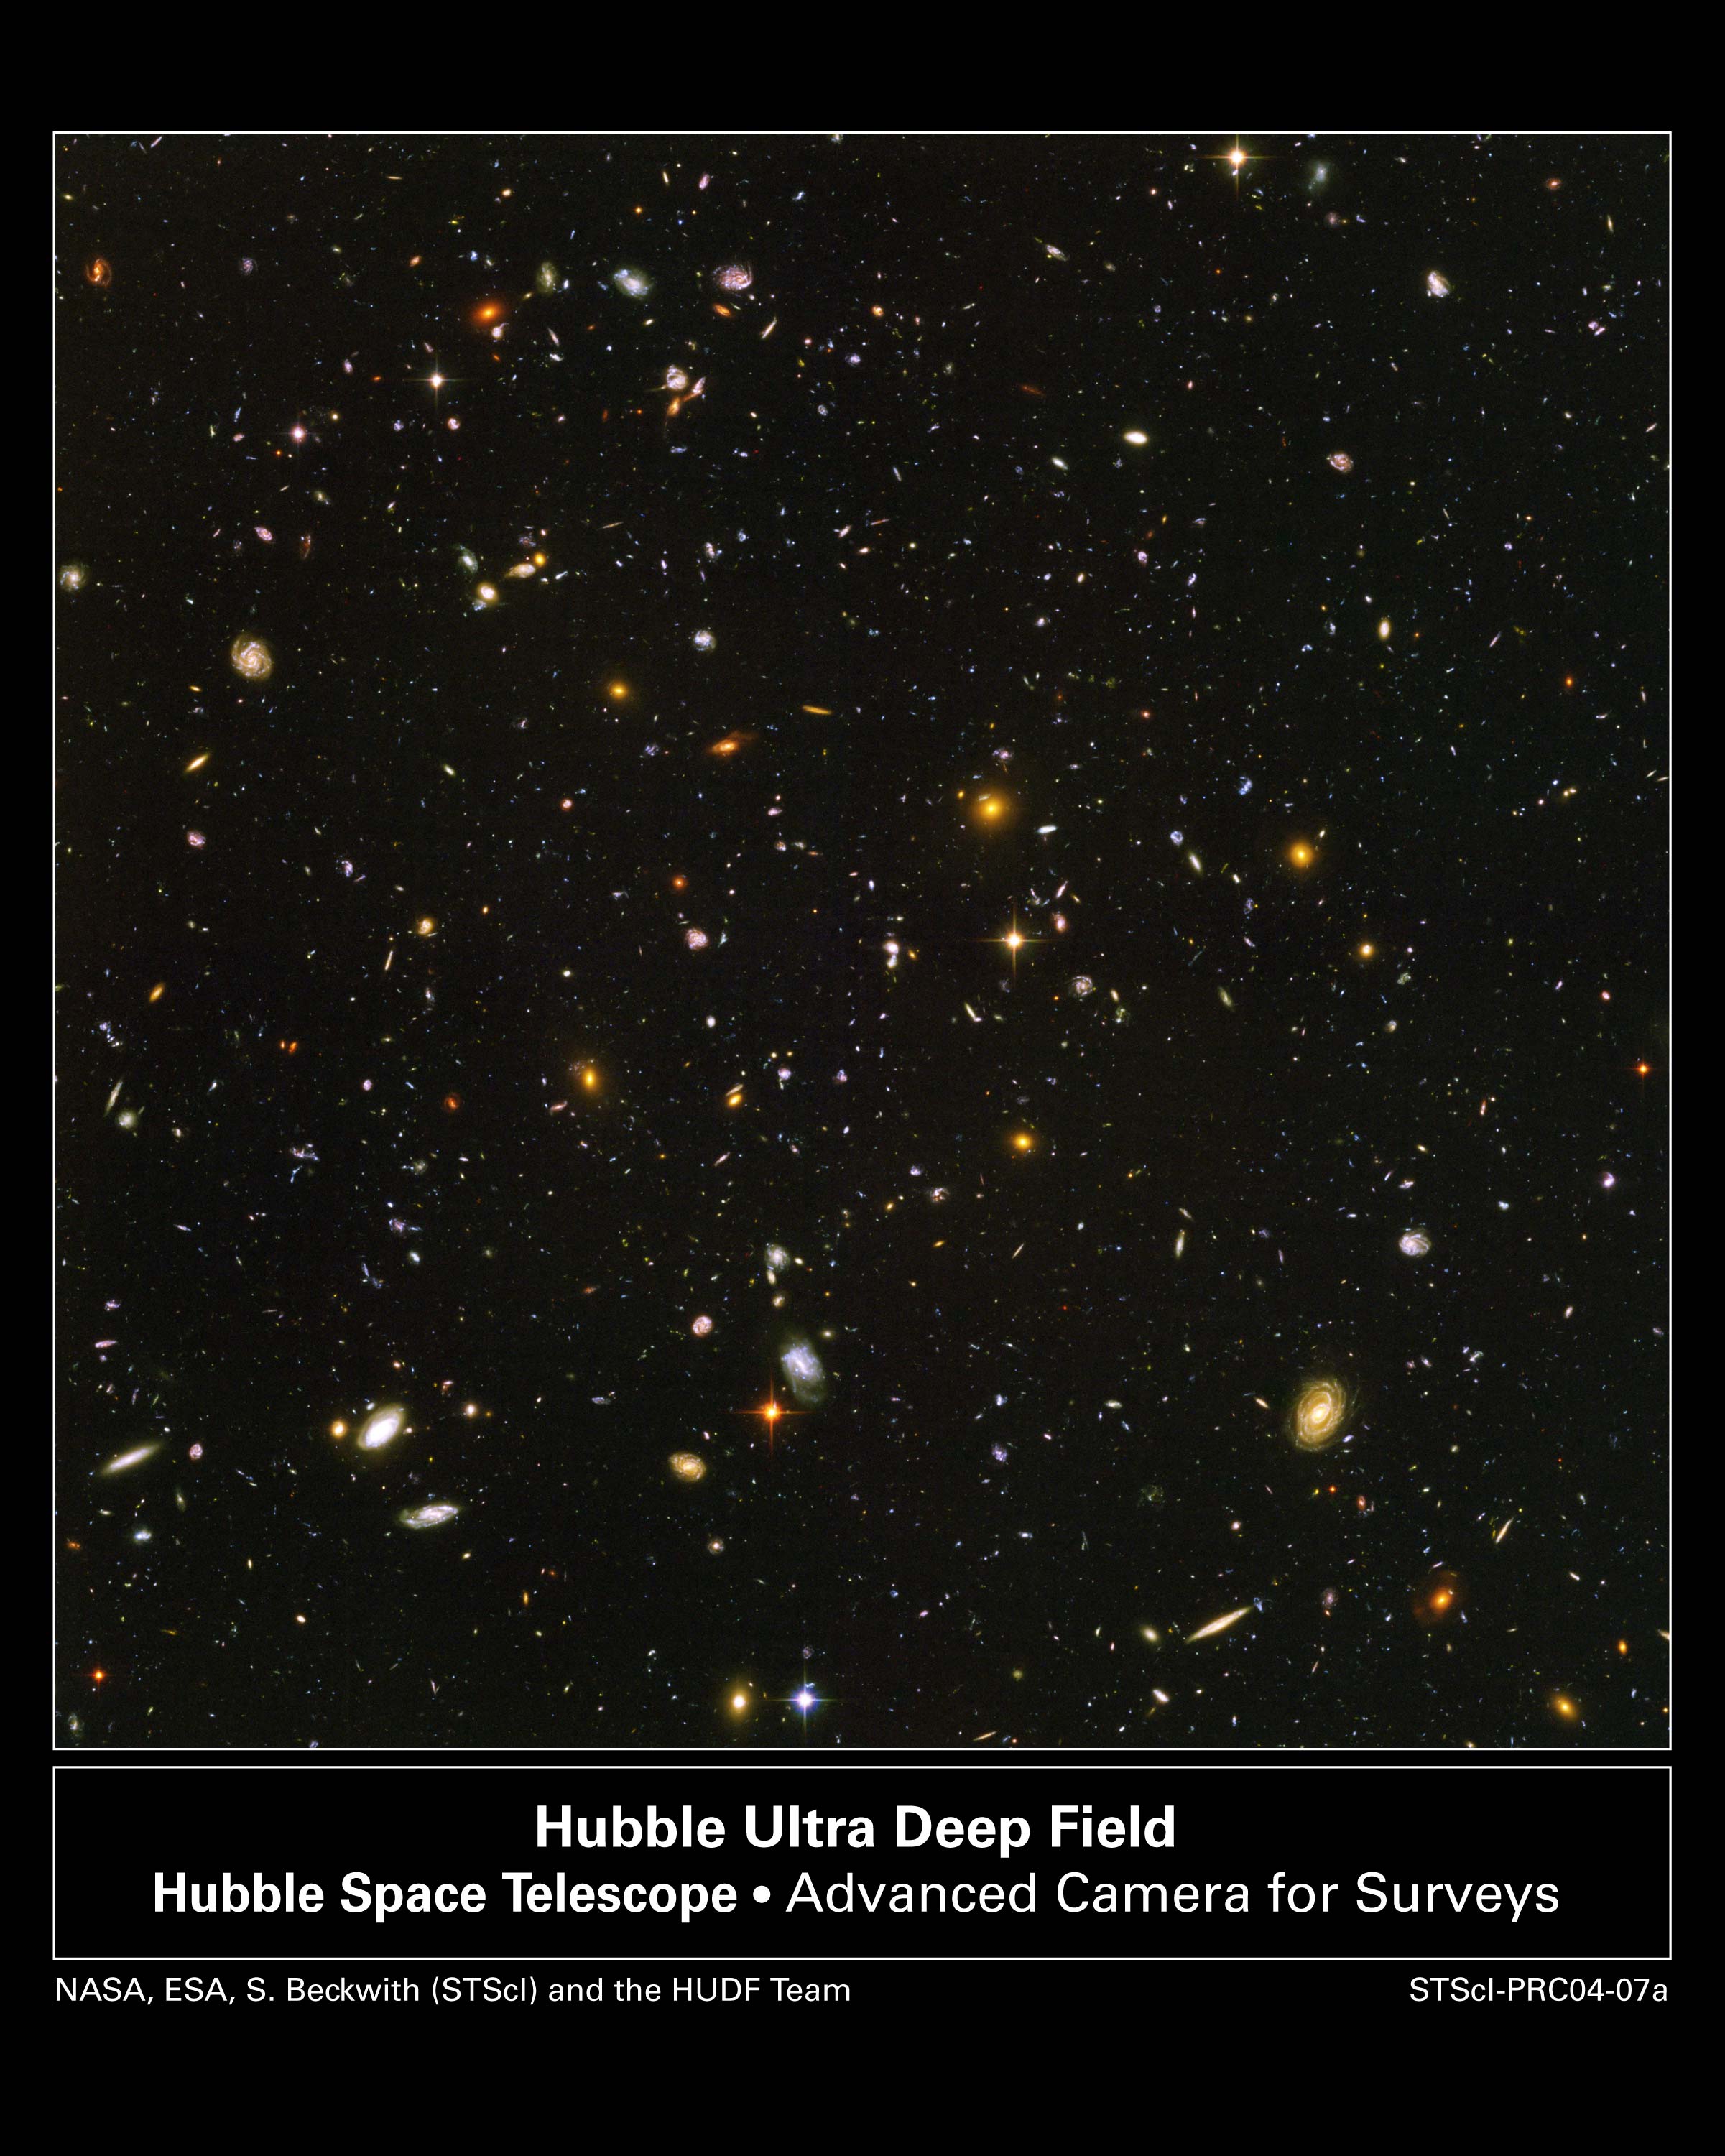 Oblasti glubokogo obzora kosmicheskogo teleskopa im.Habbla